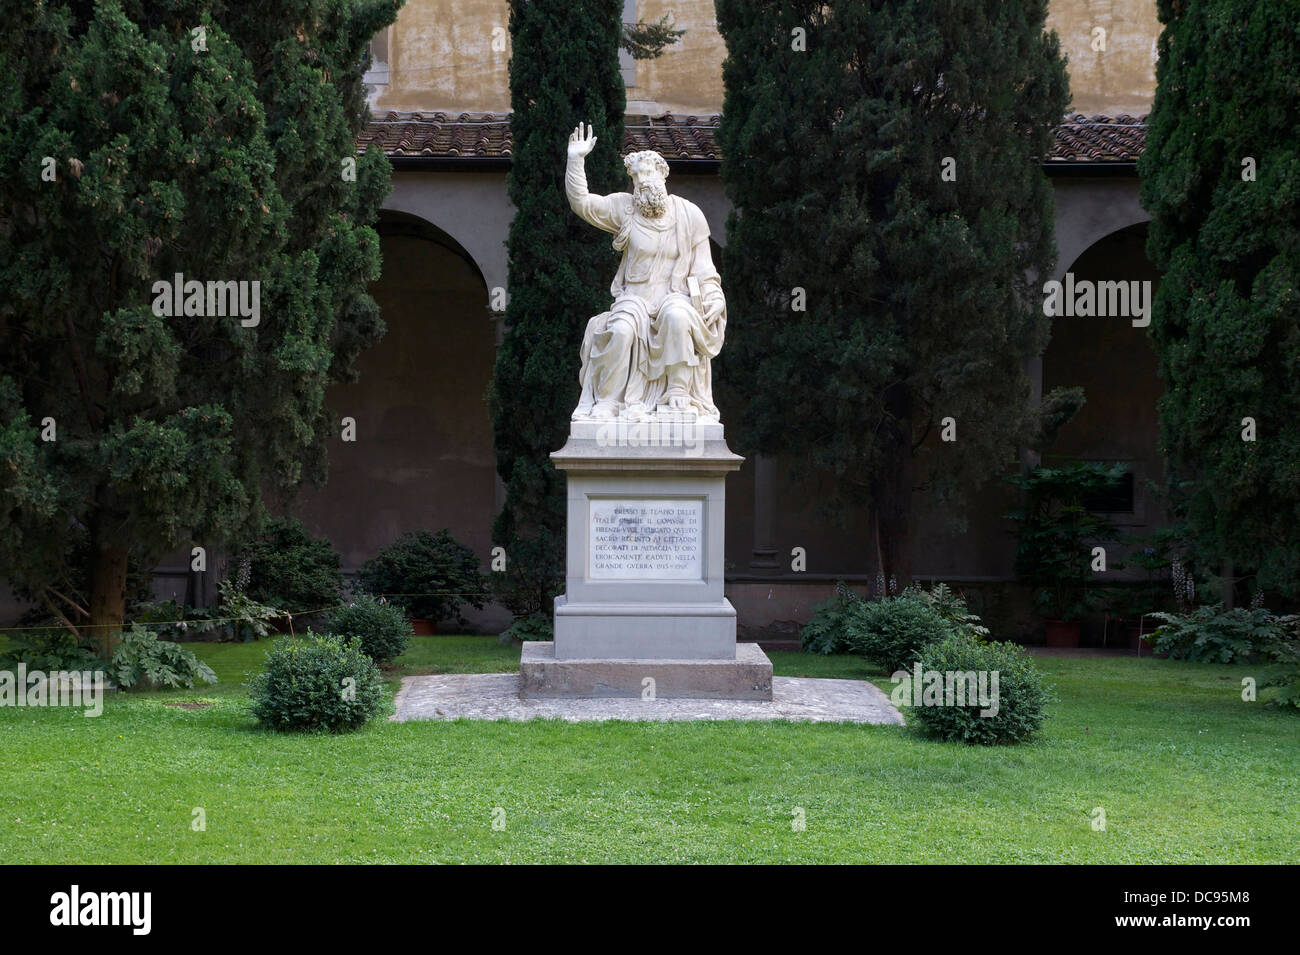 Un monumento a los florentinos caídos durante la WW1. Dios Padre, por Bandinelli. Claustro de Santa Croce, Florencia, Italia. Foto de stock